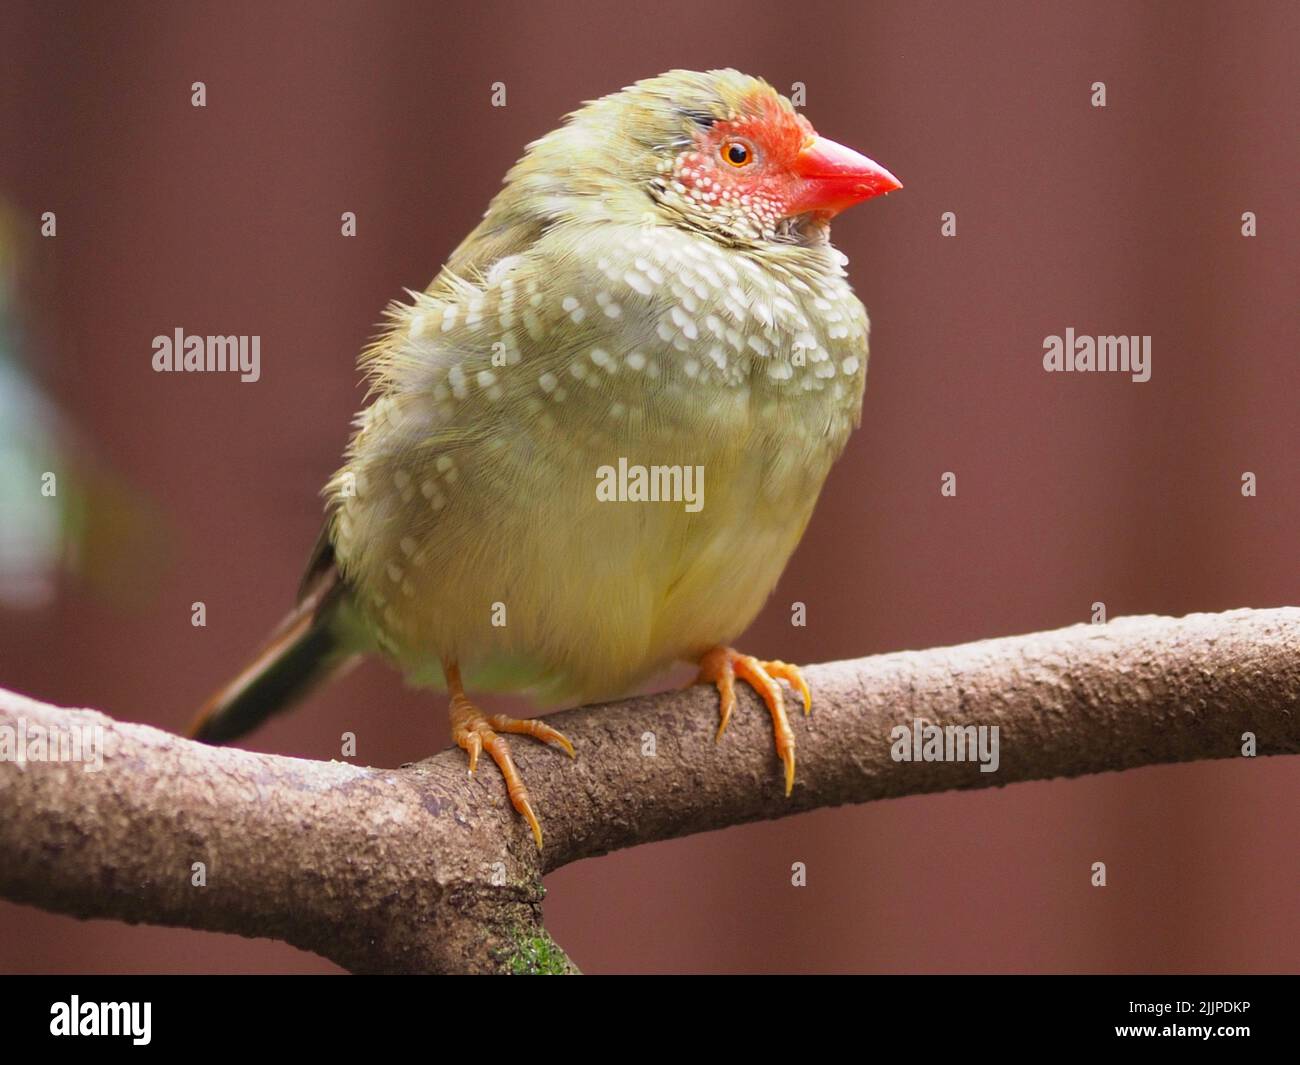 Vivace cheery fazzy maschio Star Finch con occhi luminosi e piumaggio abbagliante. Foto Stock